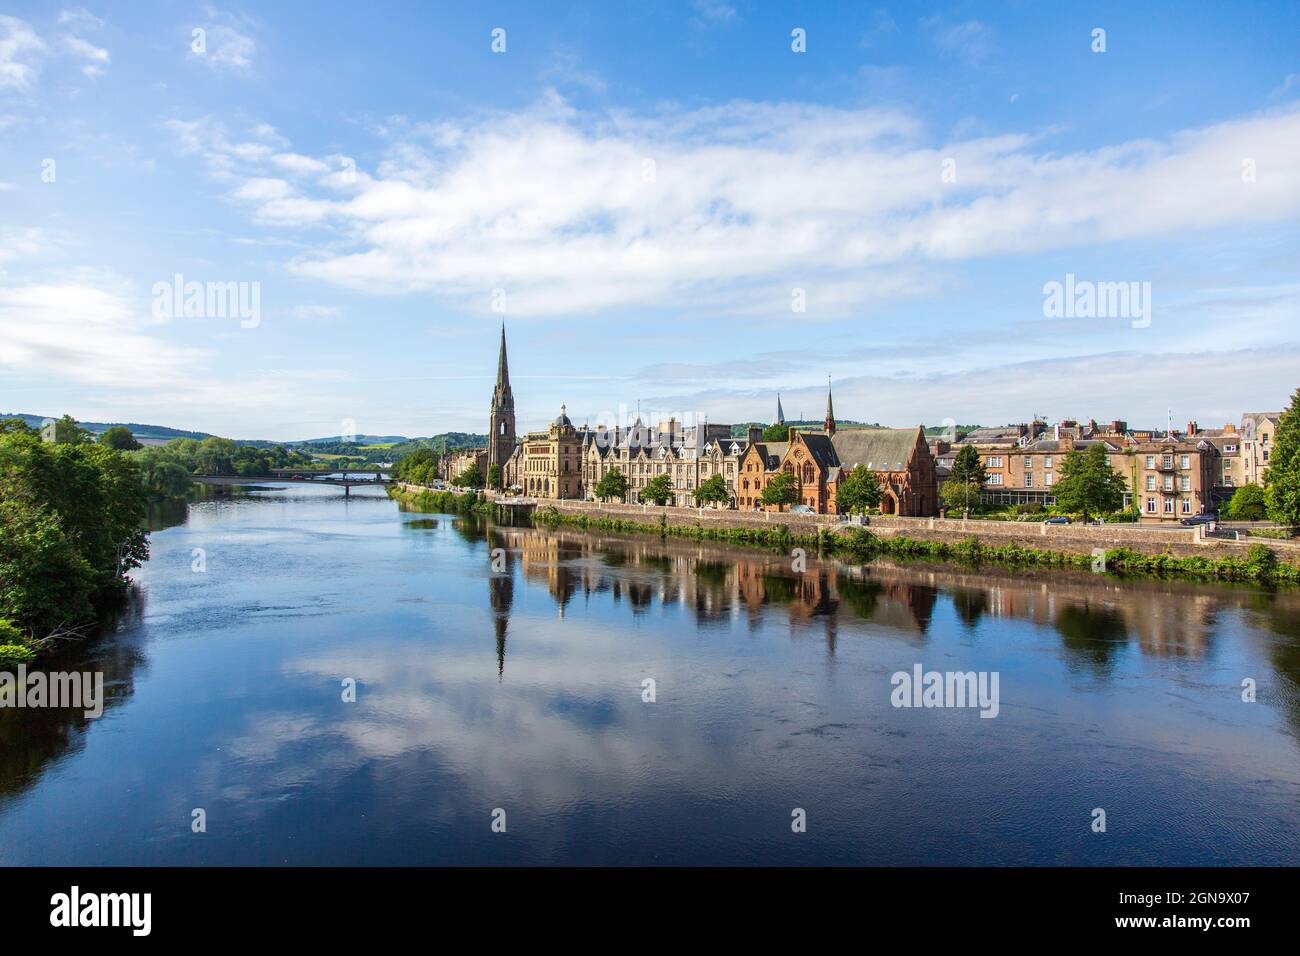 La ciudad de Perth y el río Tay, Escocia Foto de stock